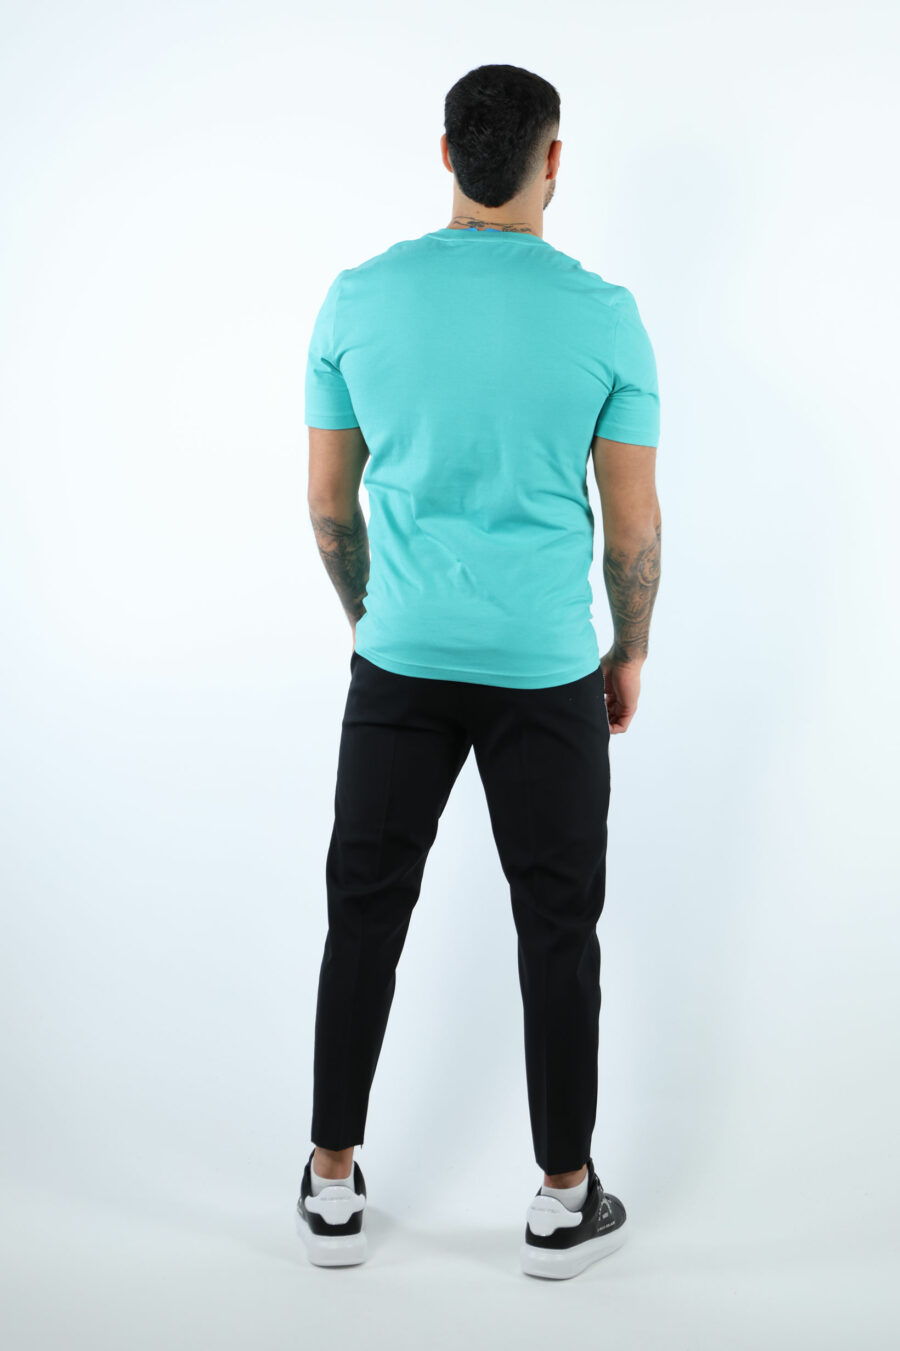 Camiseta verde azulado con maxilogo negro clásico - 107243